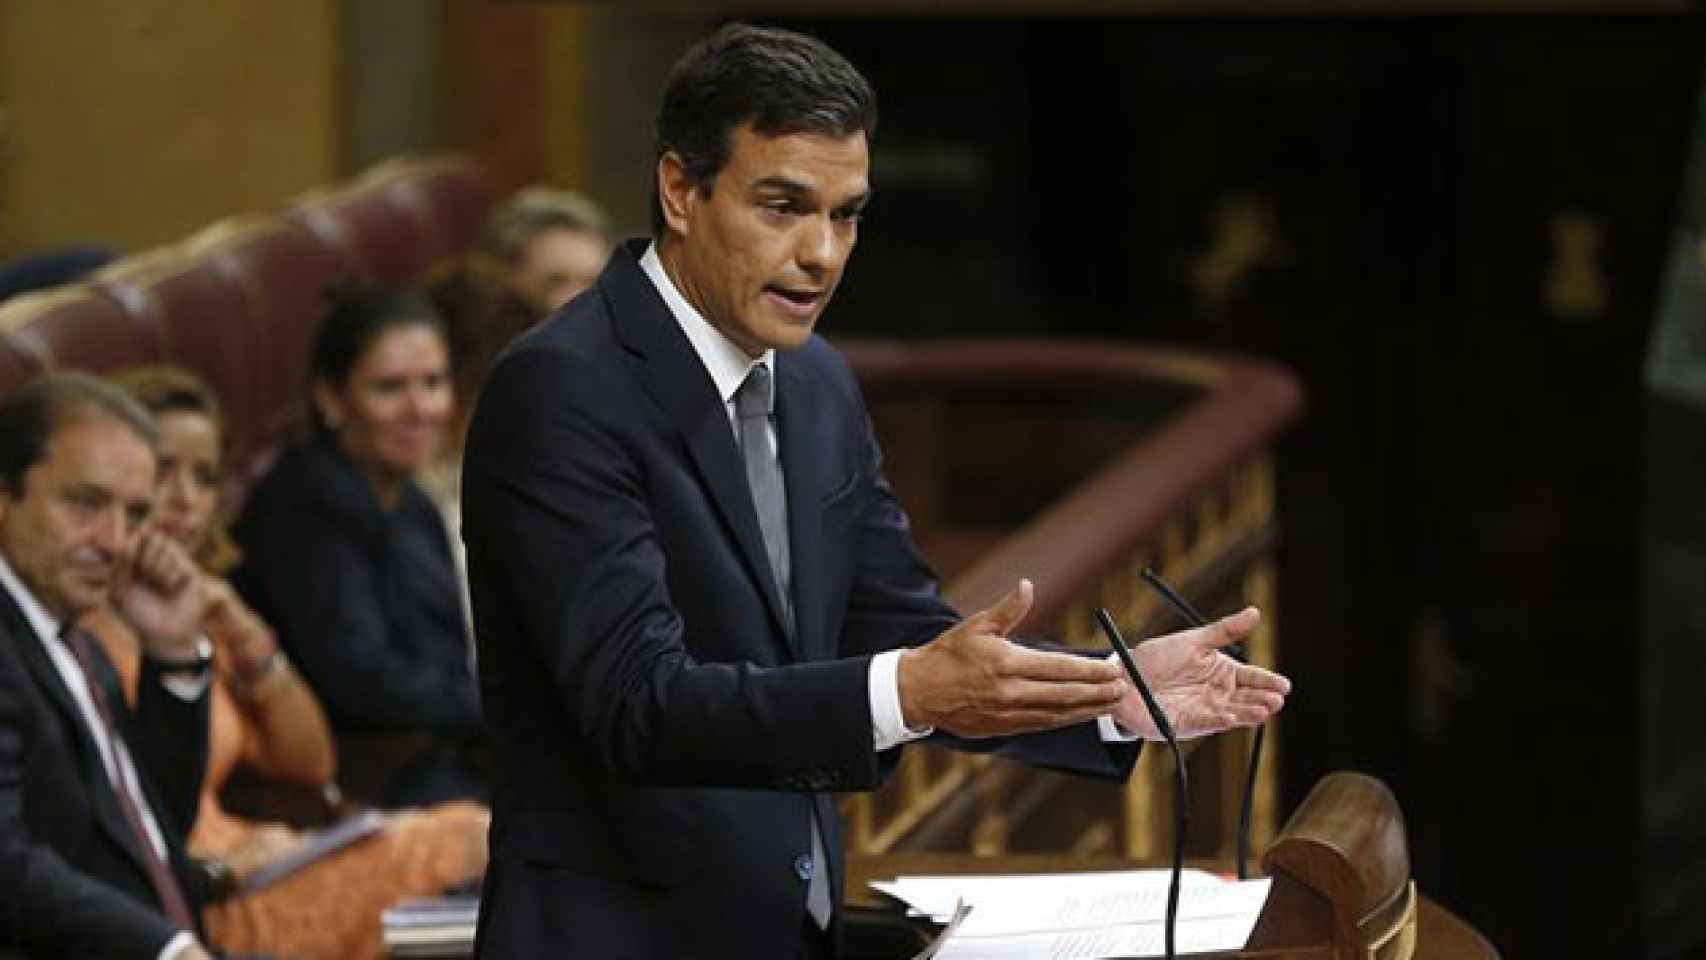 Pedro Sánchez, líder del PSOE, durante el discurso en el Congreso de Diputados el miércoles / EFE